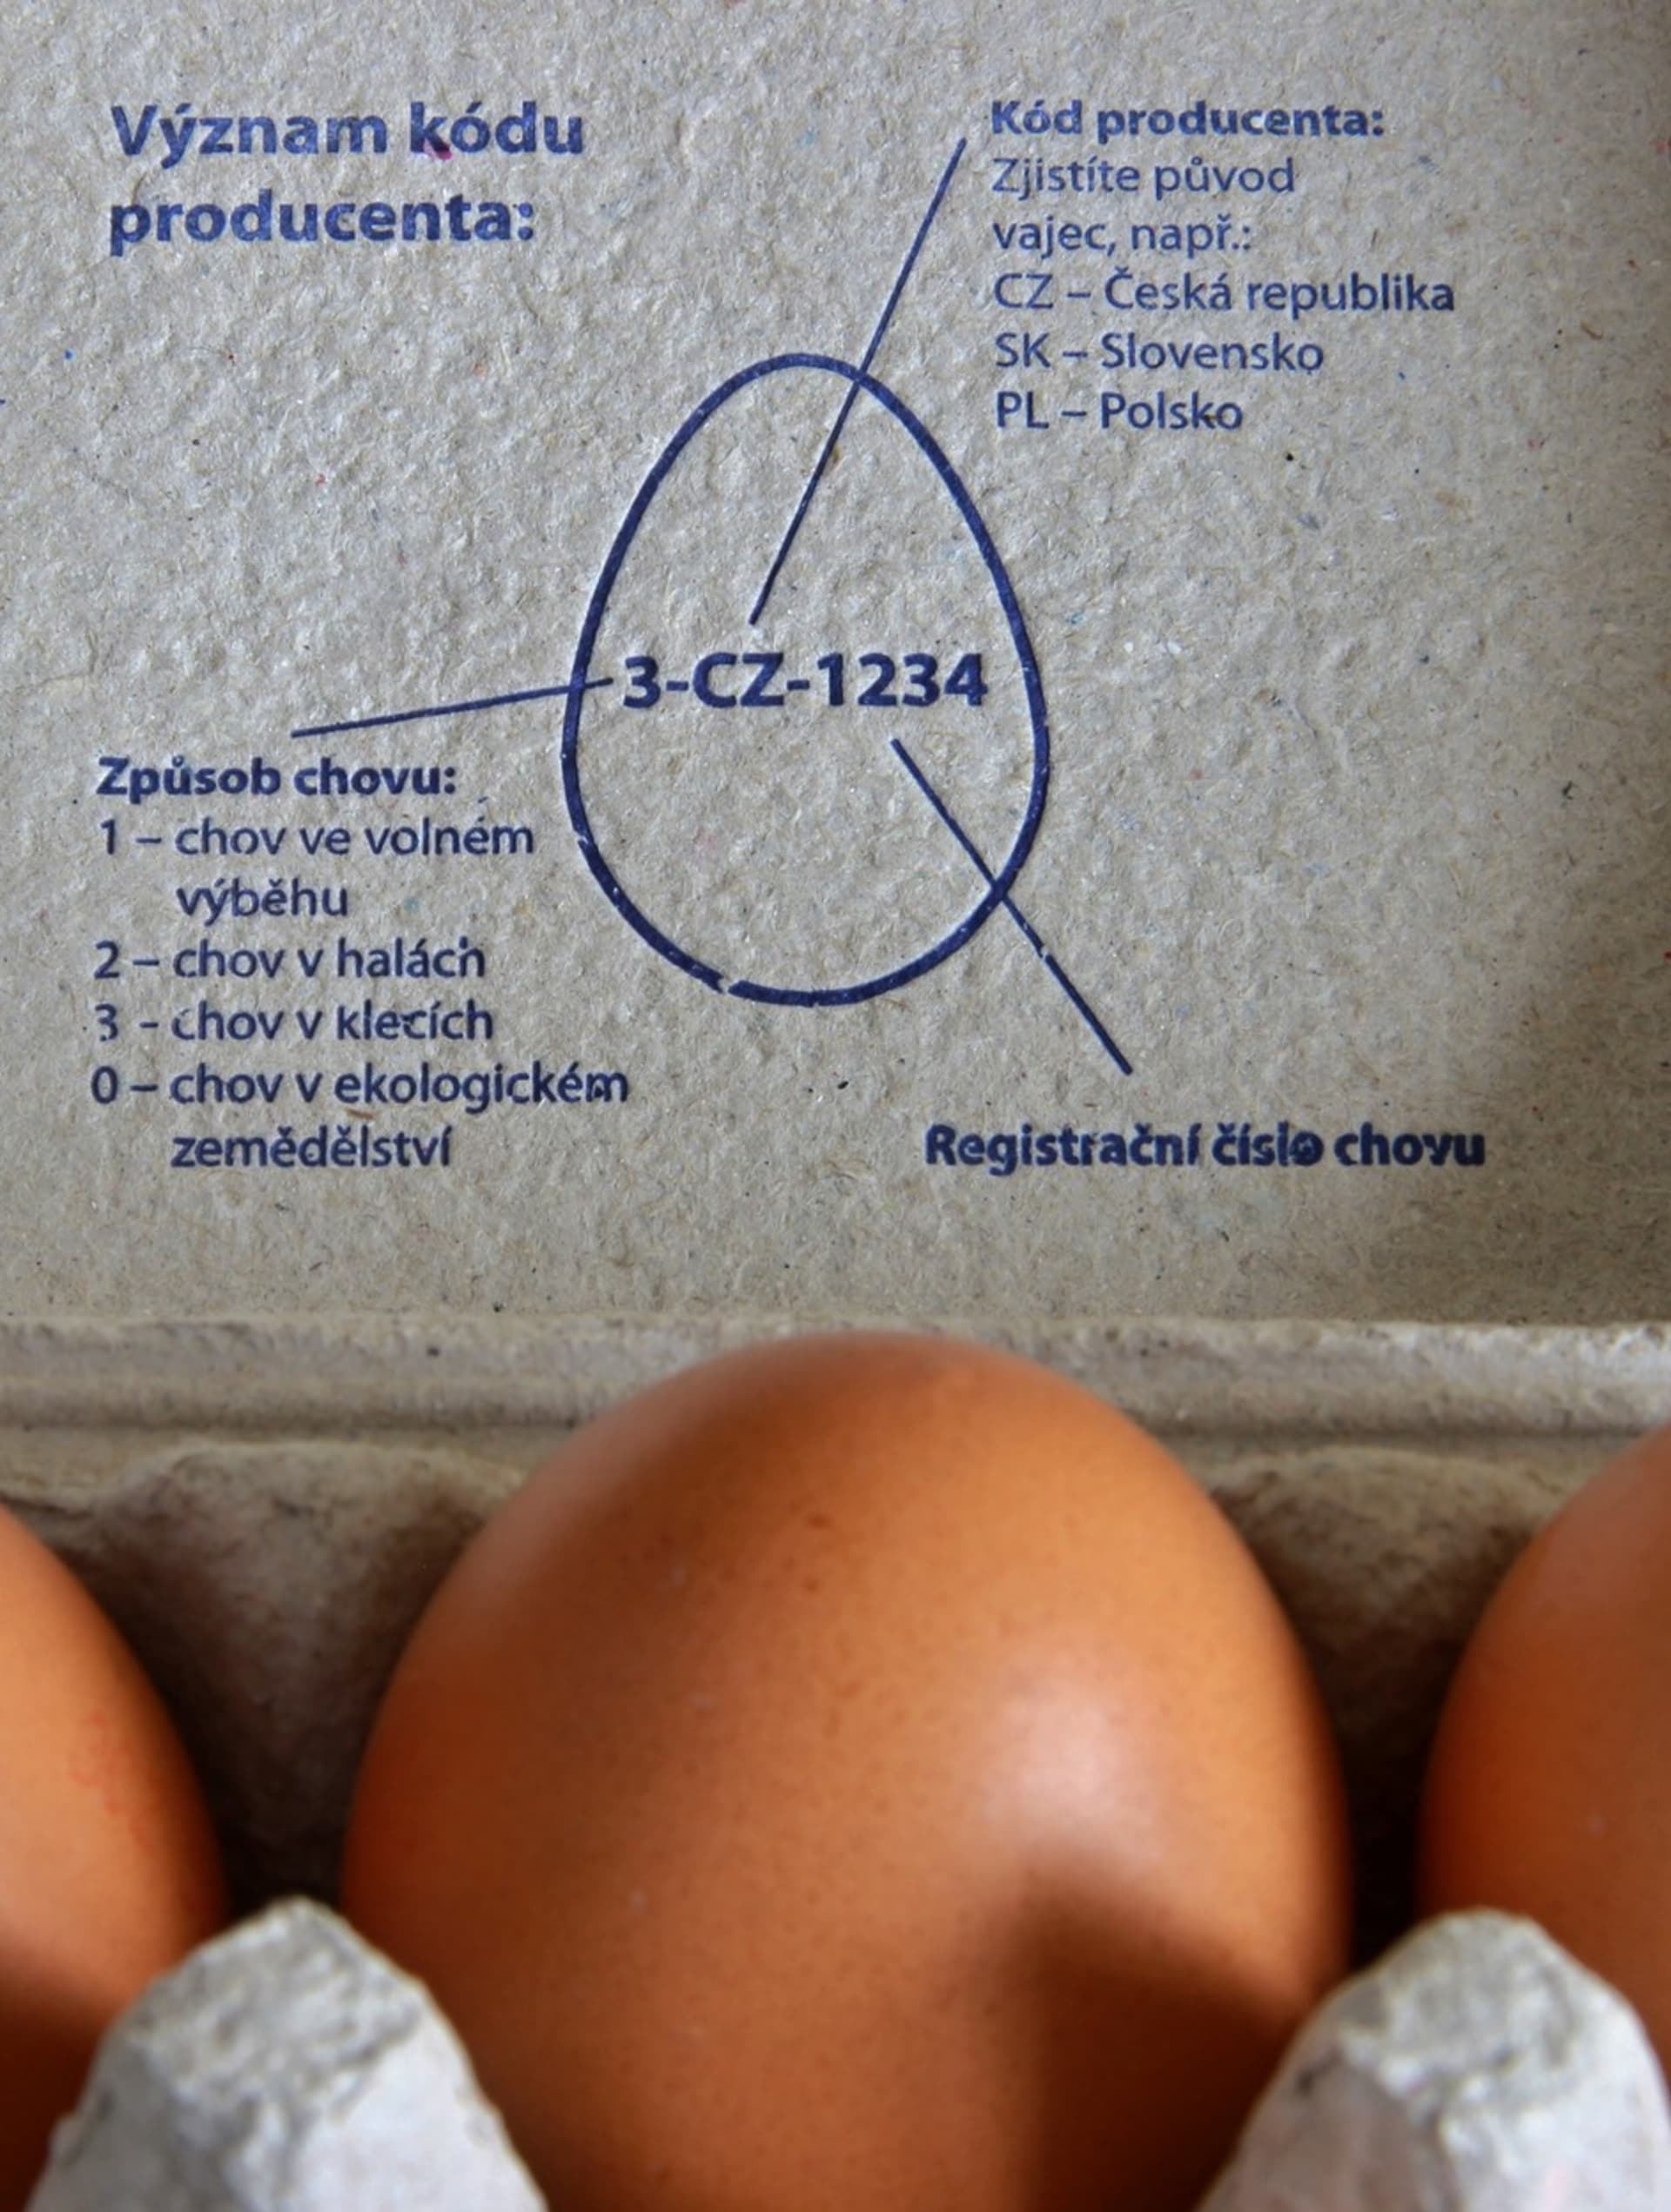 Popis identifikačního kódu na obalu od vajec.